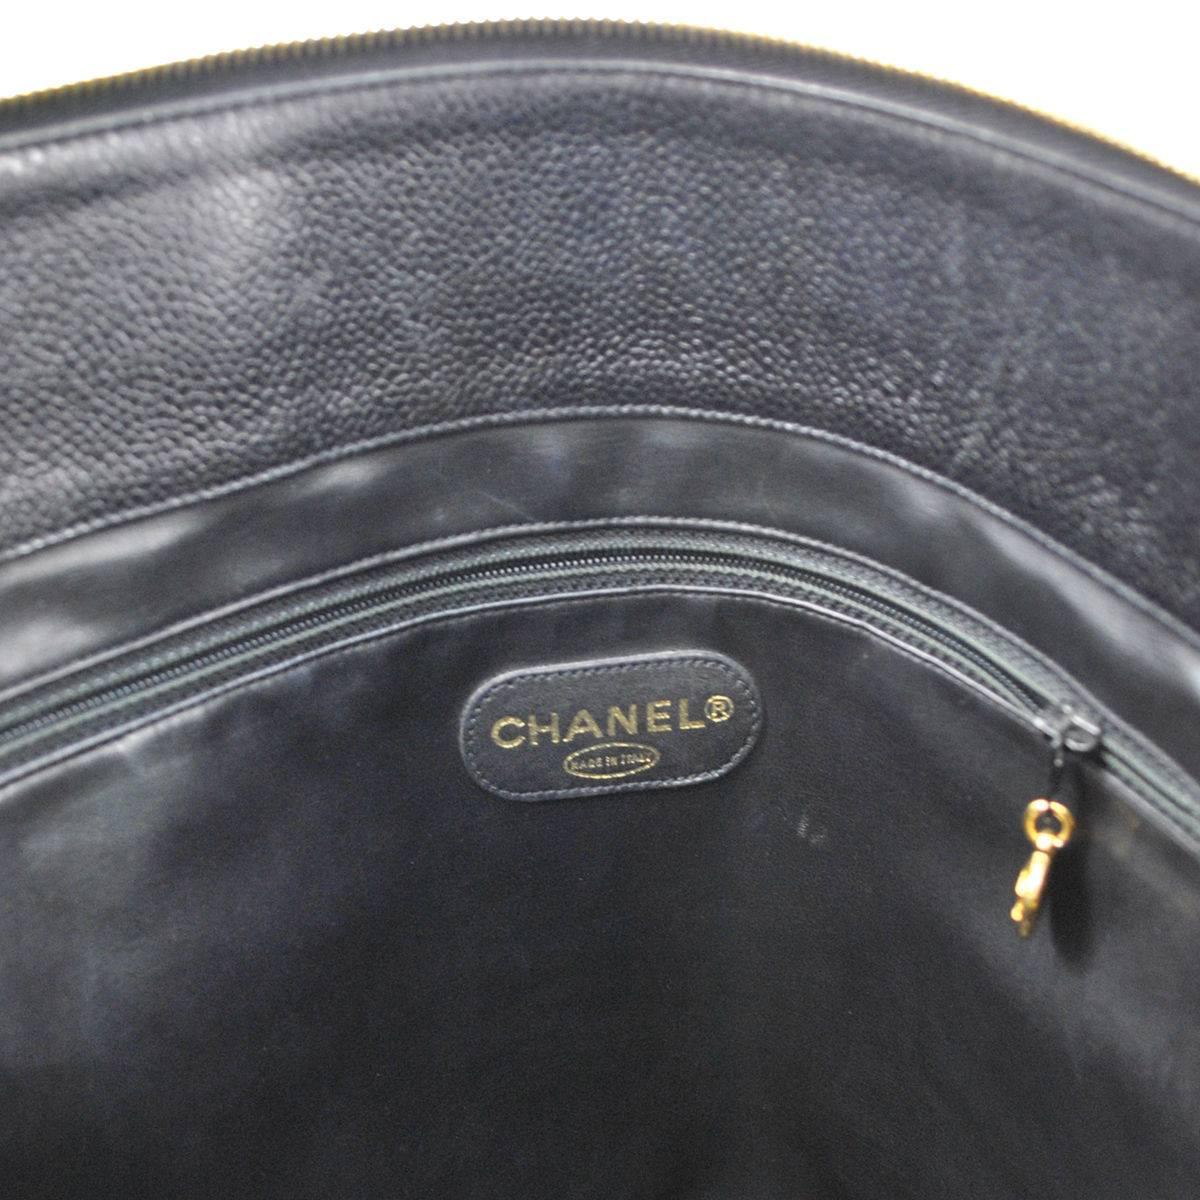 Chanel Black Caviar Leather Carryall Shopper Weekender Travel Shoulder Bag 5